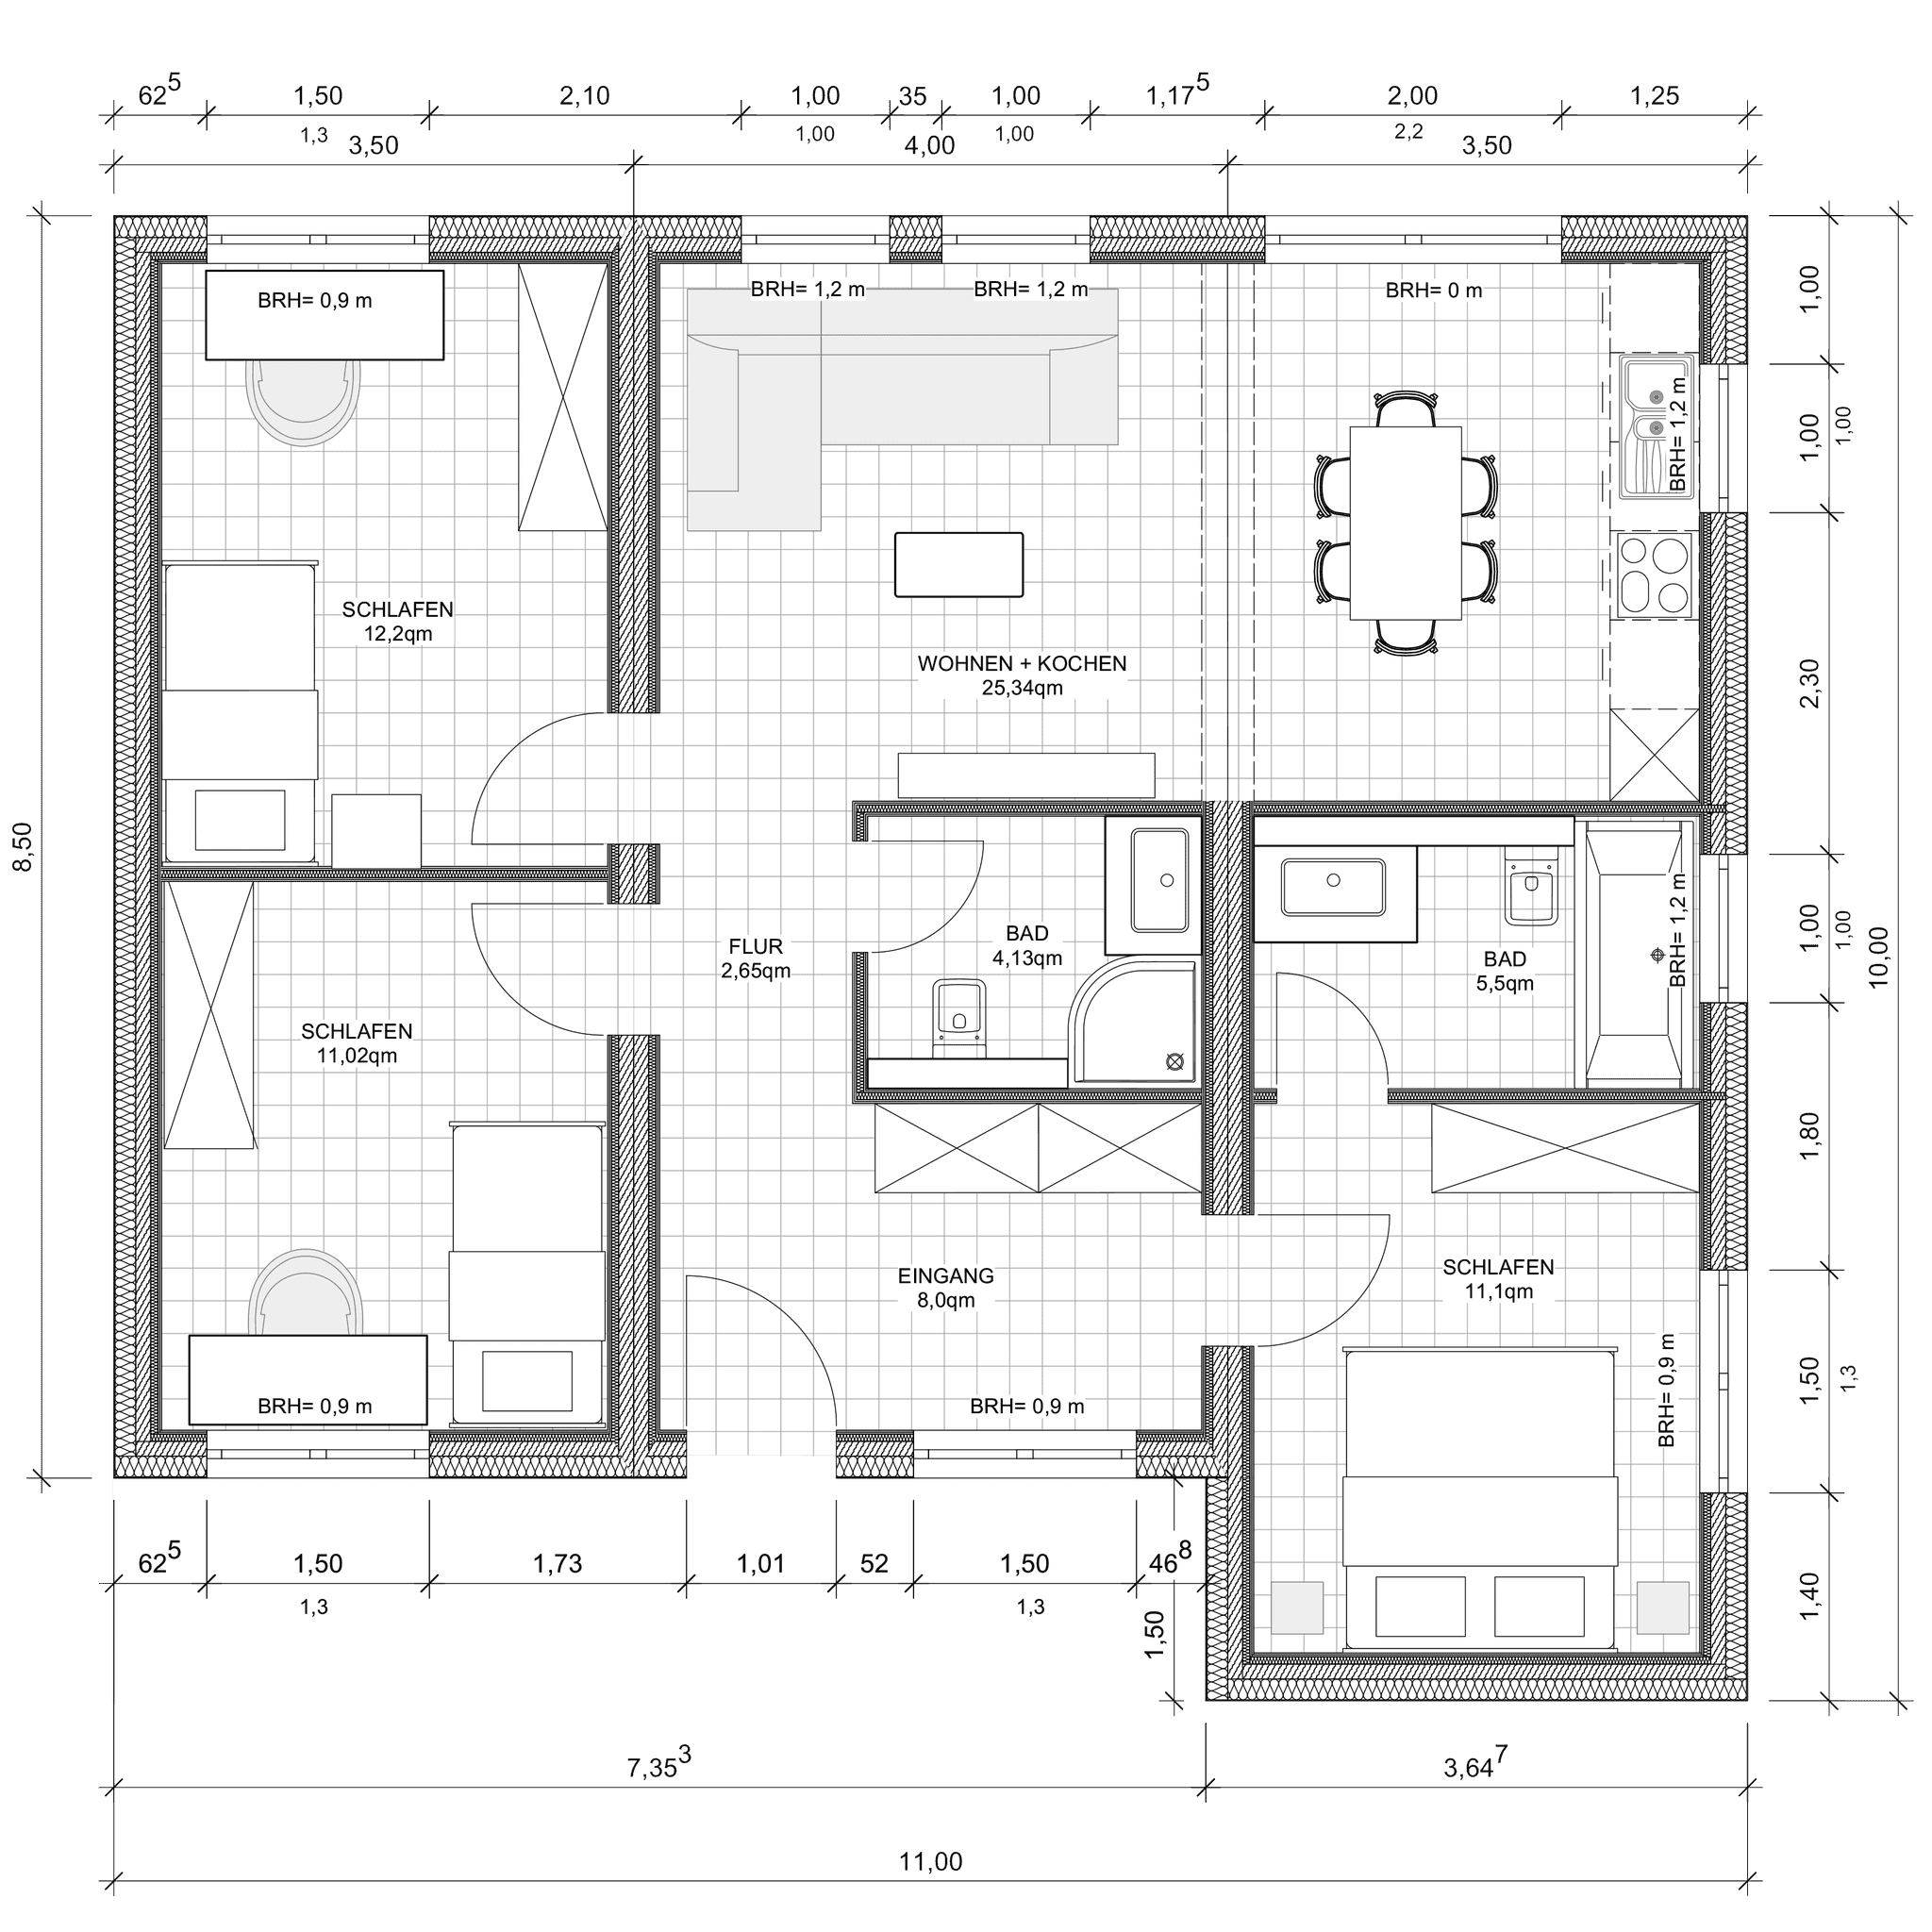 Grundriss von einem Modulbaus aus 3 Modulen, mit 3 Schlafzimmern und 2 Bädern und einer großen Wohnküche.